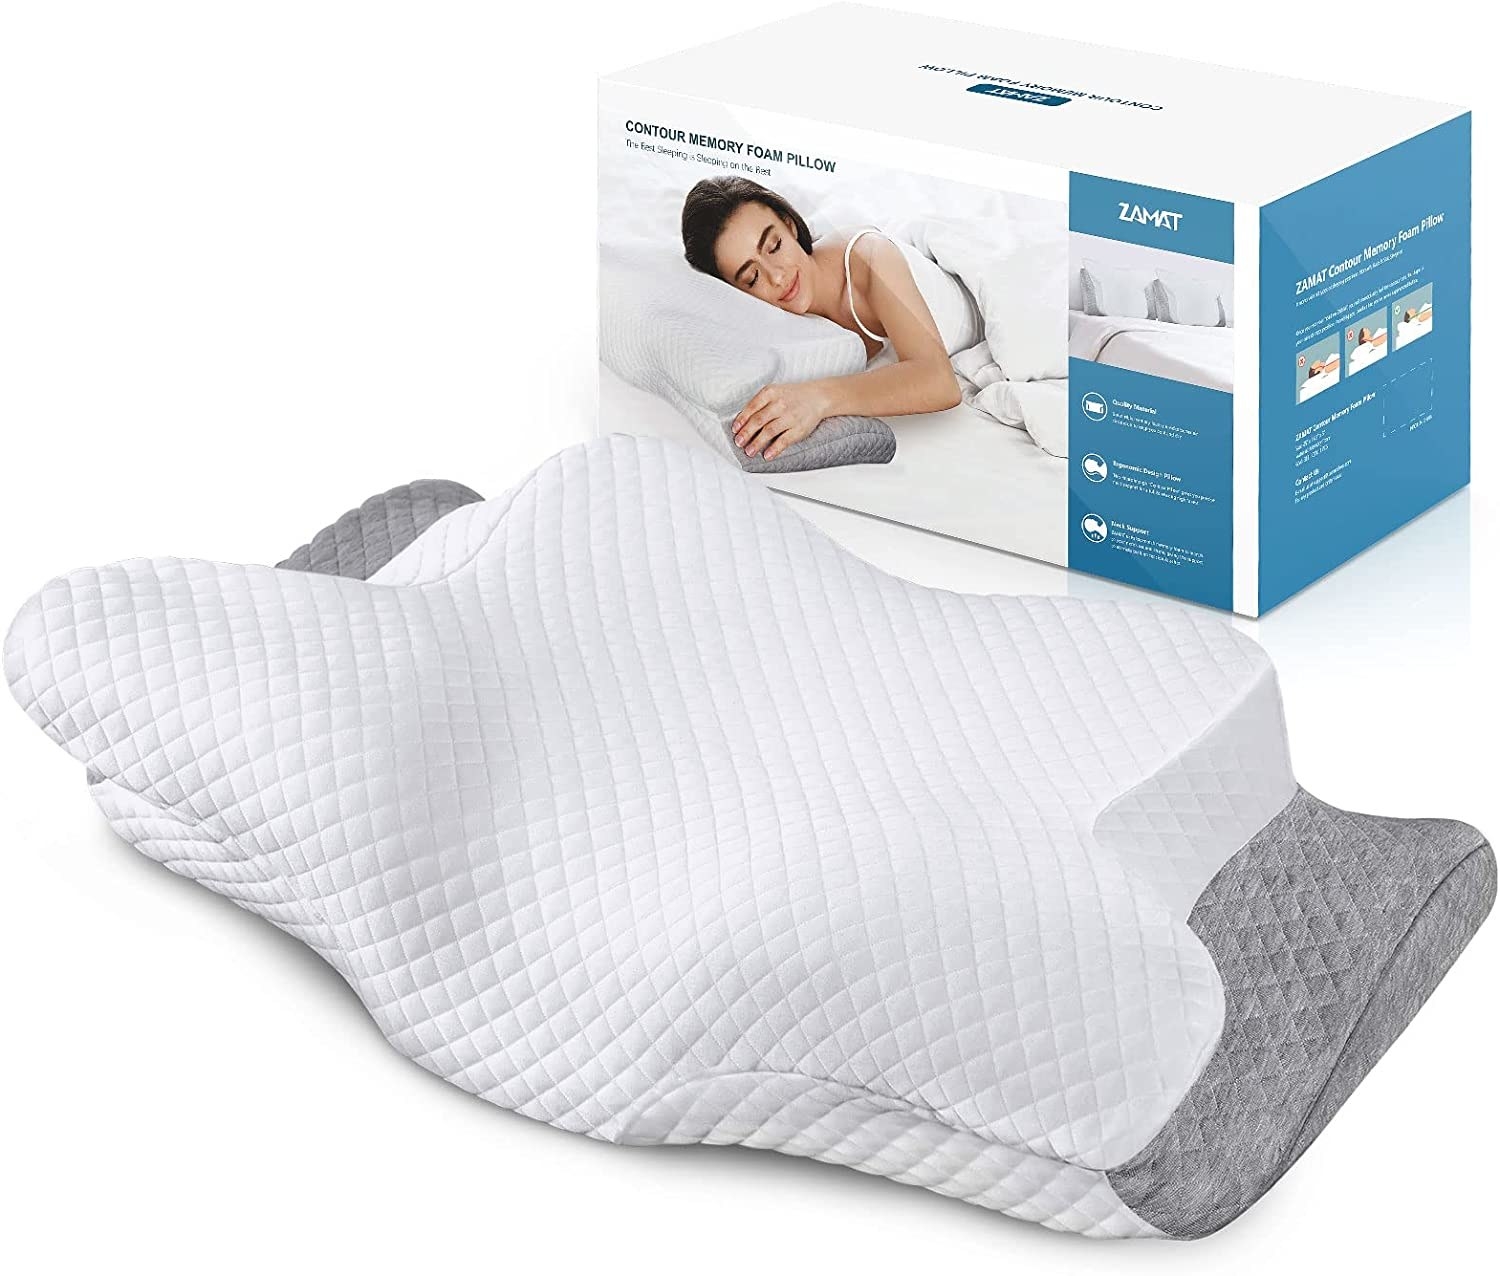 An ergonomic pillow